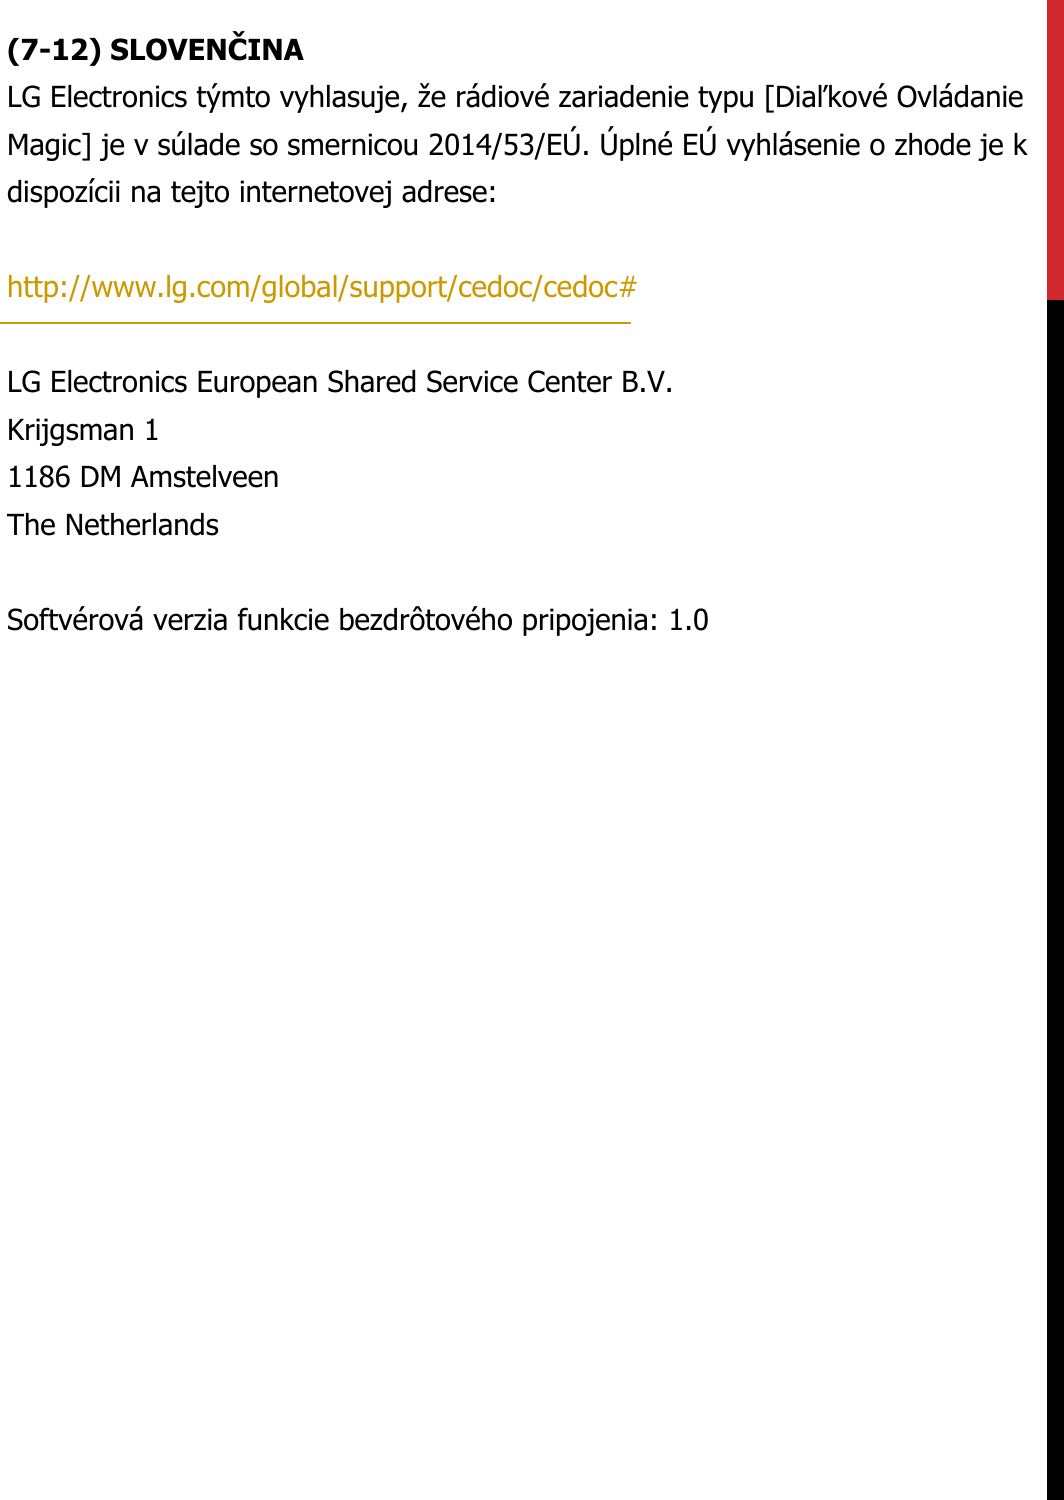 (7-12) SLOVENČINALG Electronics týmto vyhlasuje, že rádiové zariadenie typu [Diaľkové Ovládanie Magic] je v súlade so smernicou 2014/53/EÚ. Úplné EÚ vyhlásenie o zhode je k dispozícii na tejto internetovej adrese:   http://www.lg.com/global/support/cedoc/cedoc#   LG Electronics European Shared Service Center B.V.  Krijgsman 1  1186 DM Amstelveen  The Netherlands   Softvérová verzia funkcie bezdrôtového pripojenia: 1.0